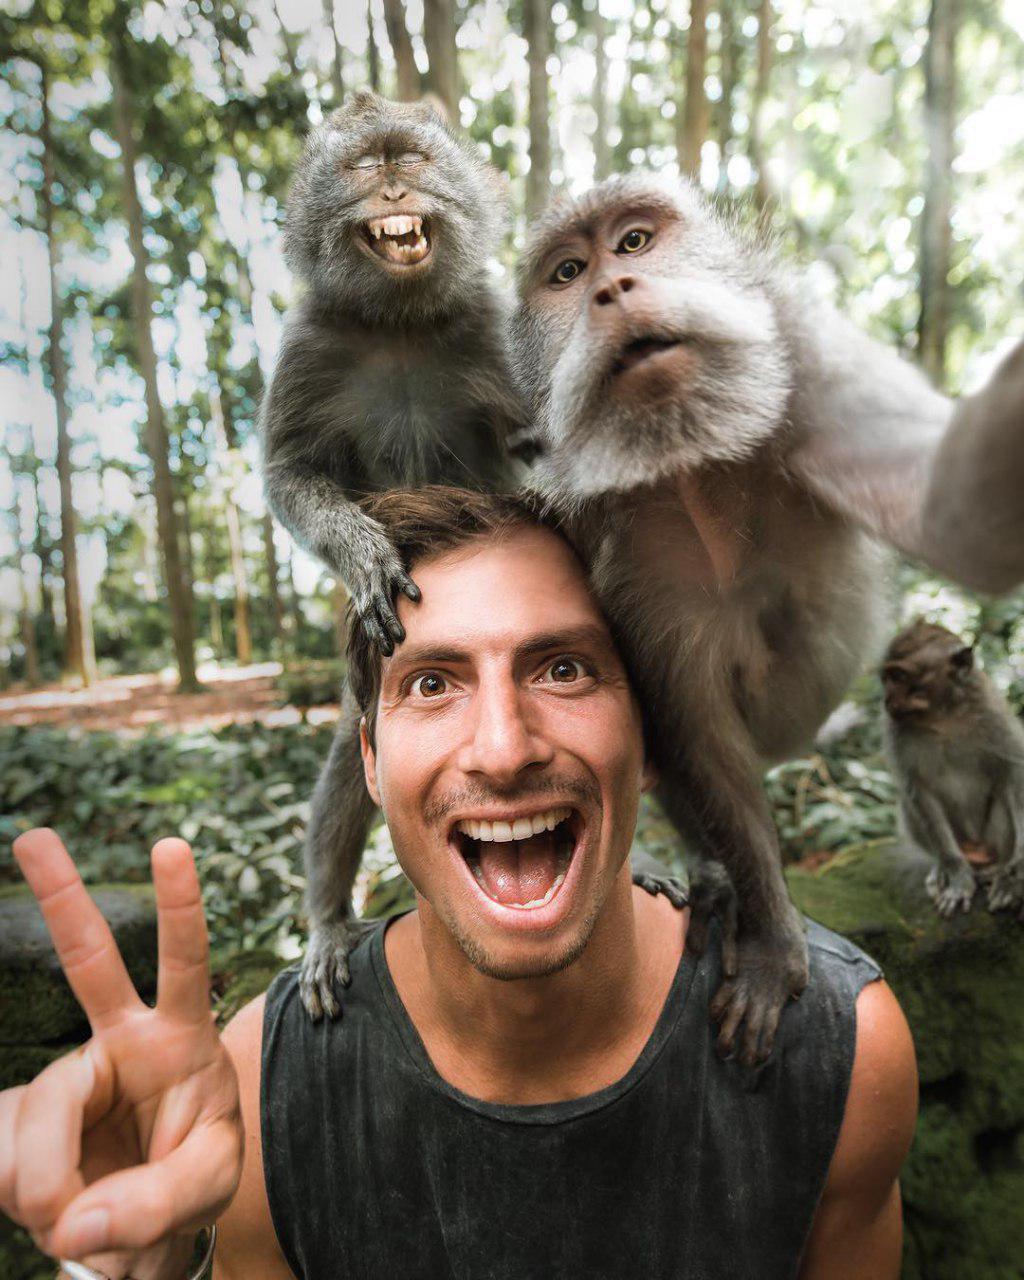 میمون ها هم سلفی می گیرند + عکس